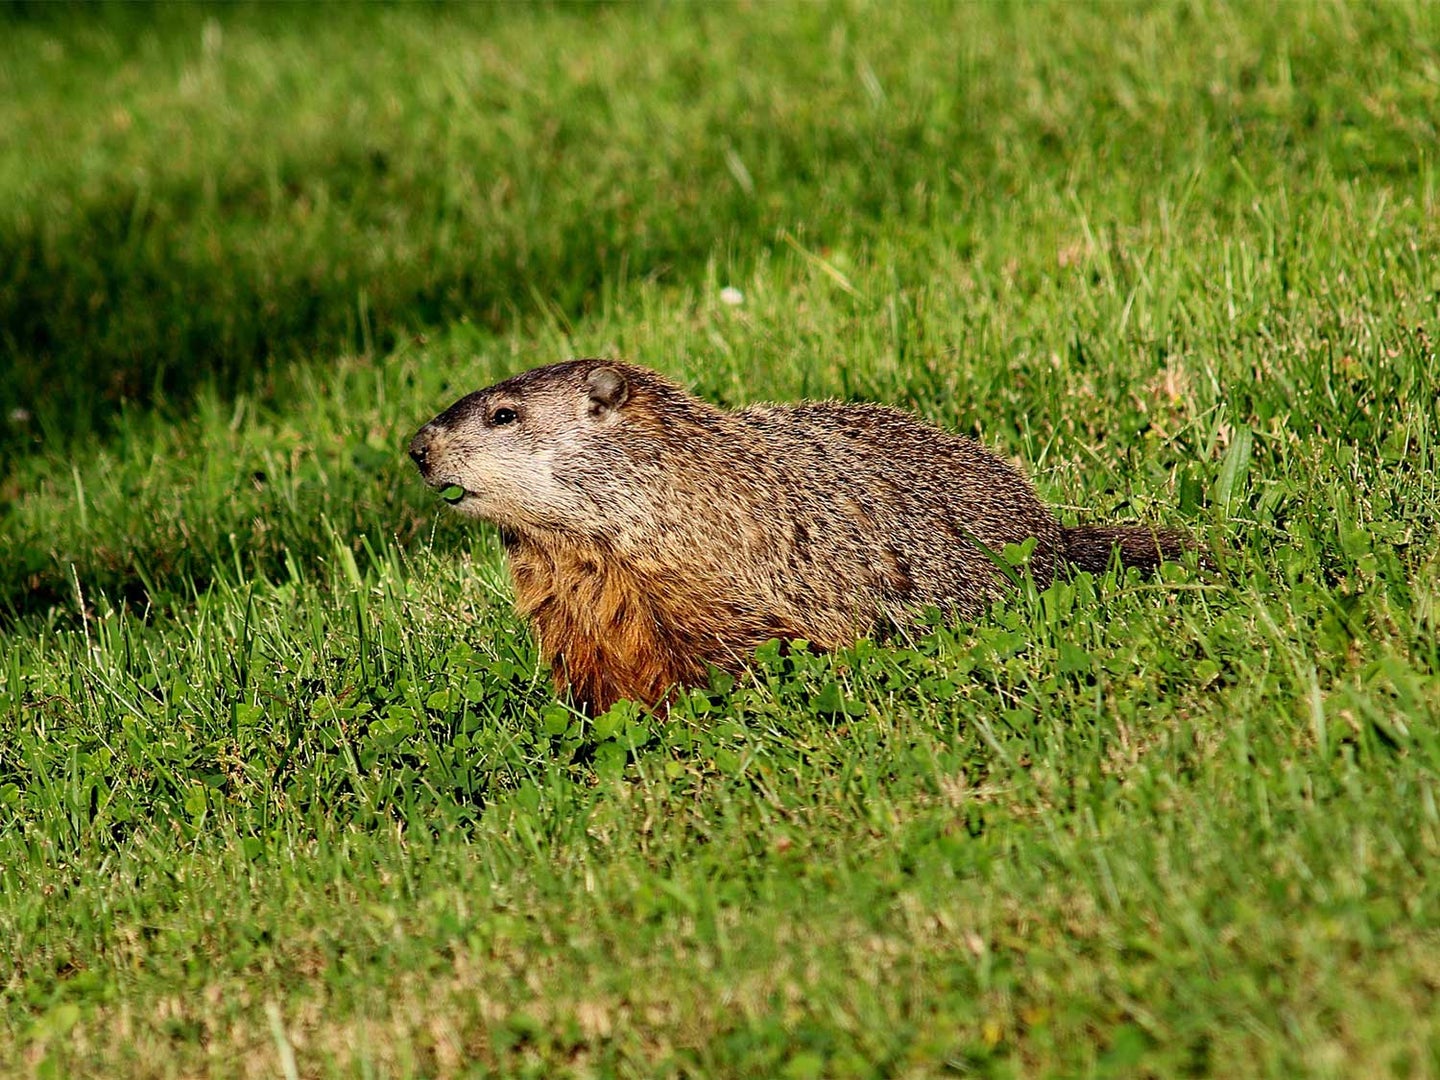 A groundhog walking through a field of grass.